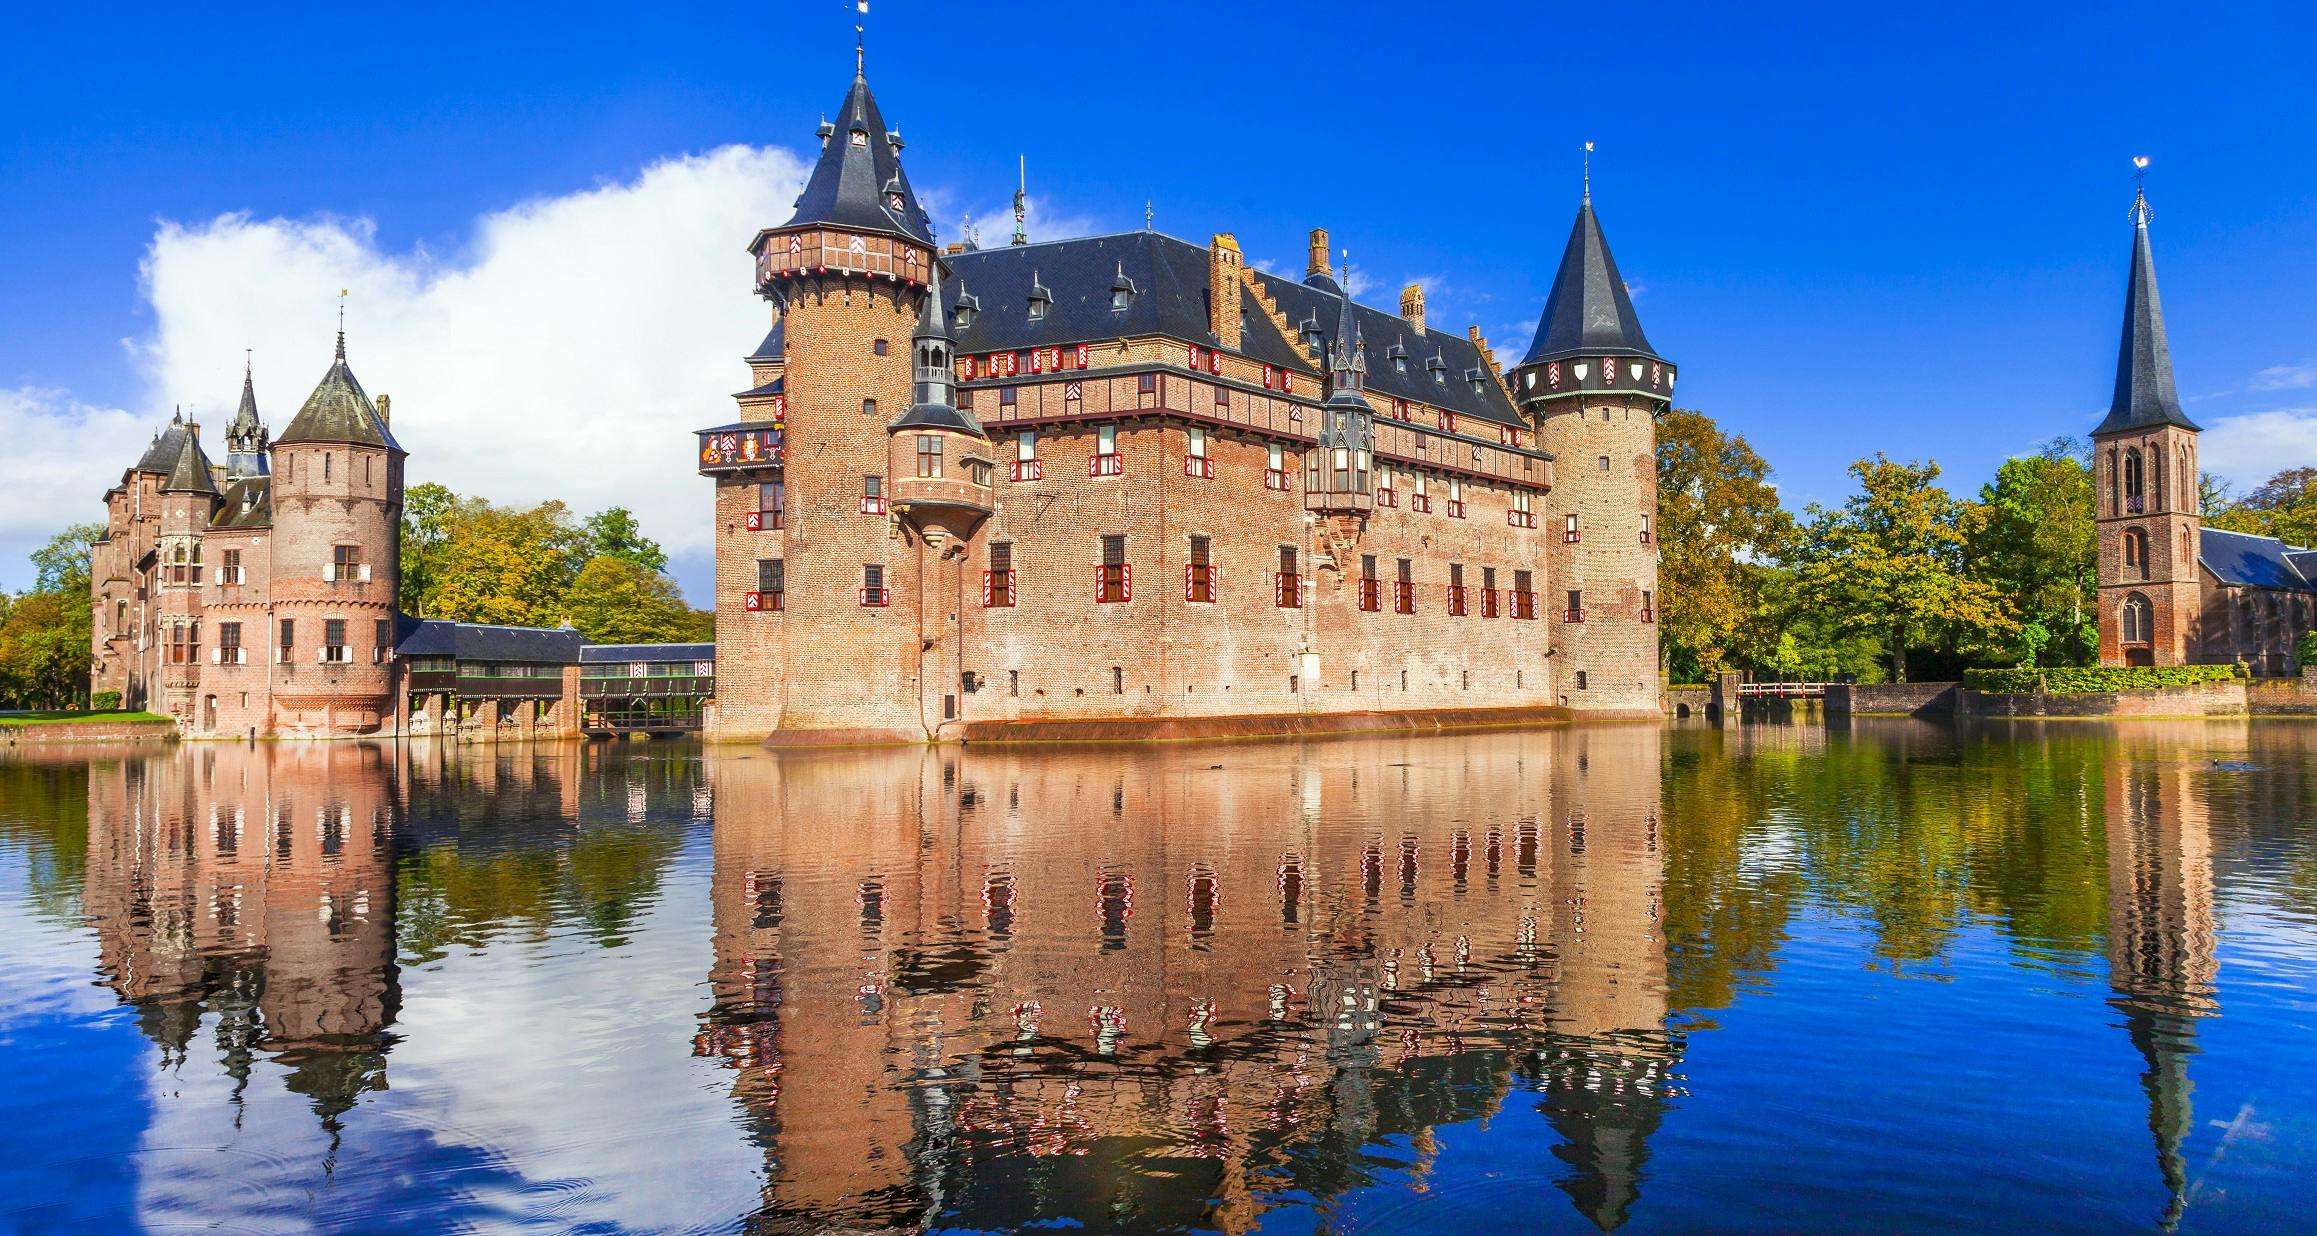 Excursión privada de un día a los castillos holandeses desde Ámsterdam